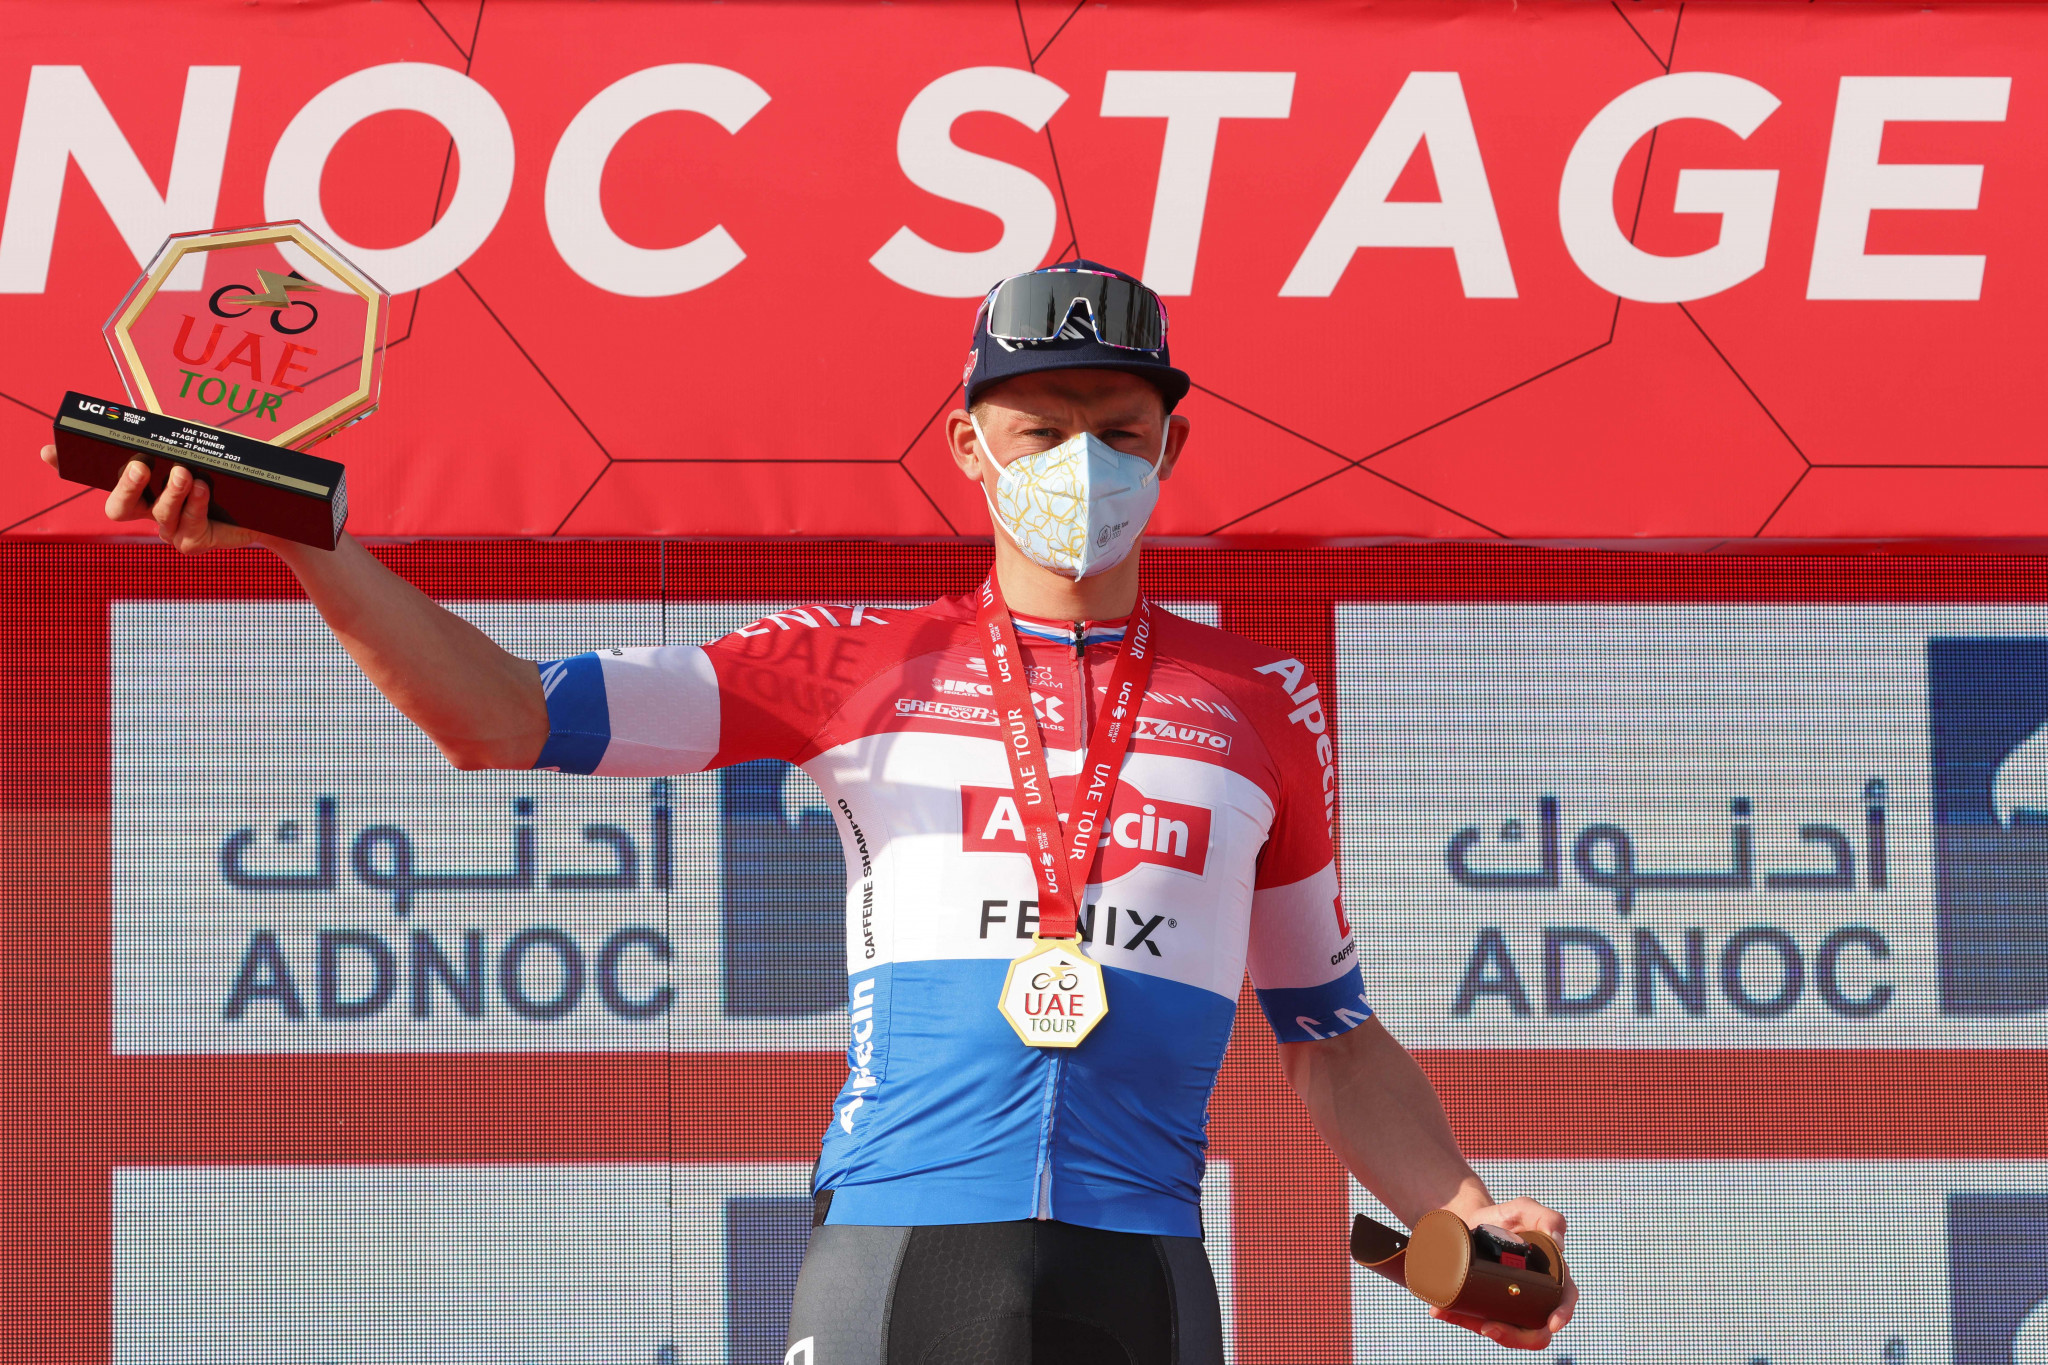 In-form Van der Poel wins first stage of UAE Tour as road season begins